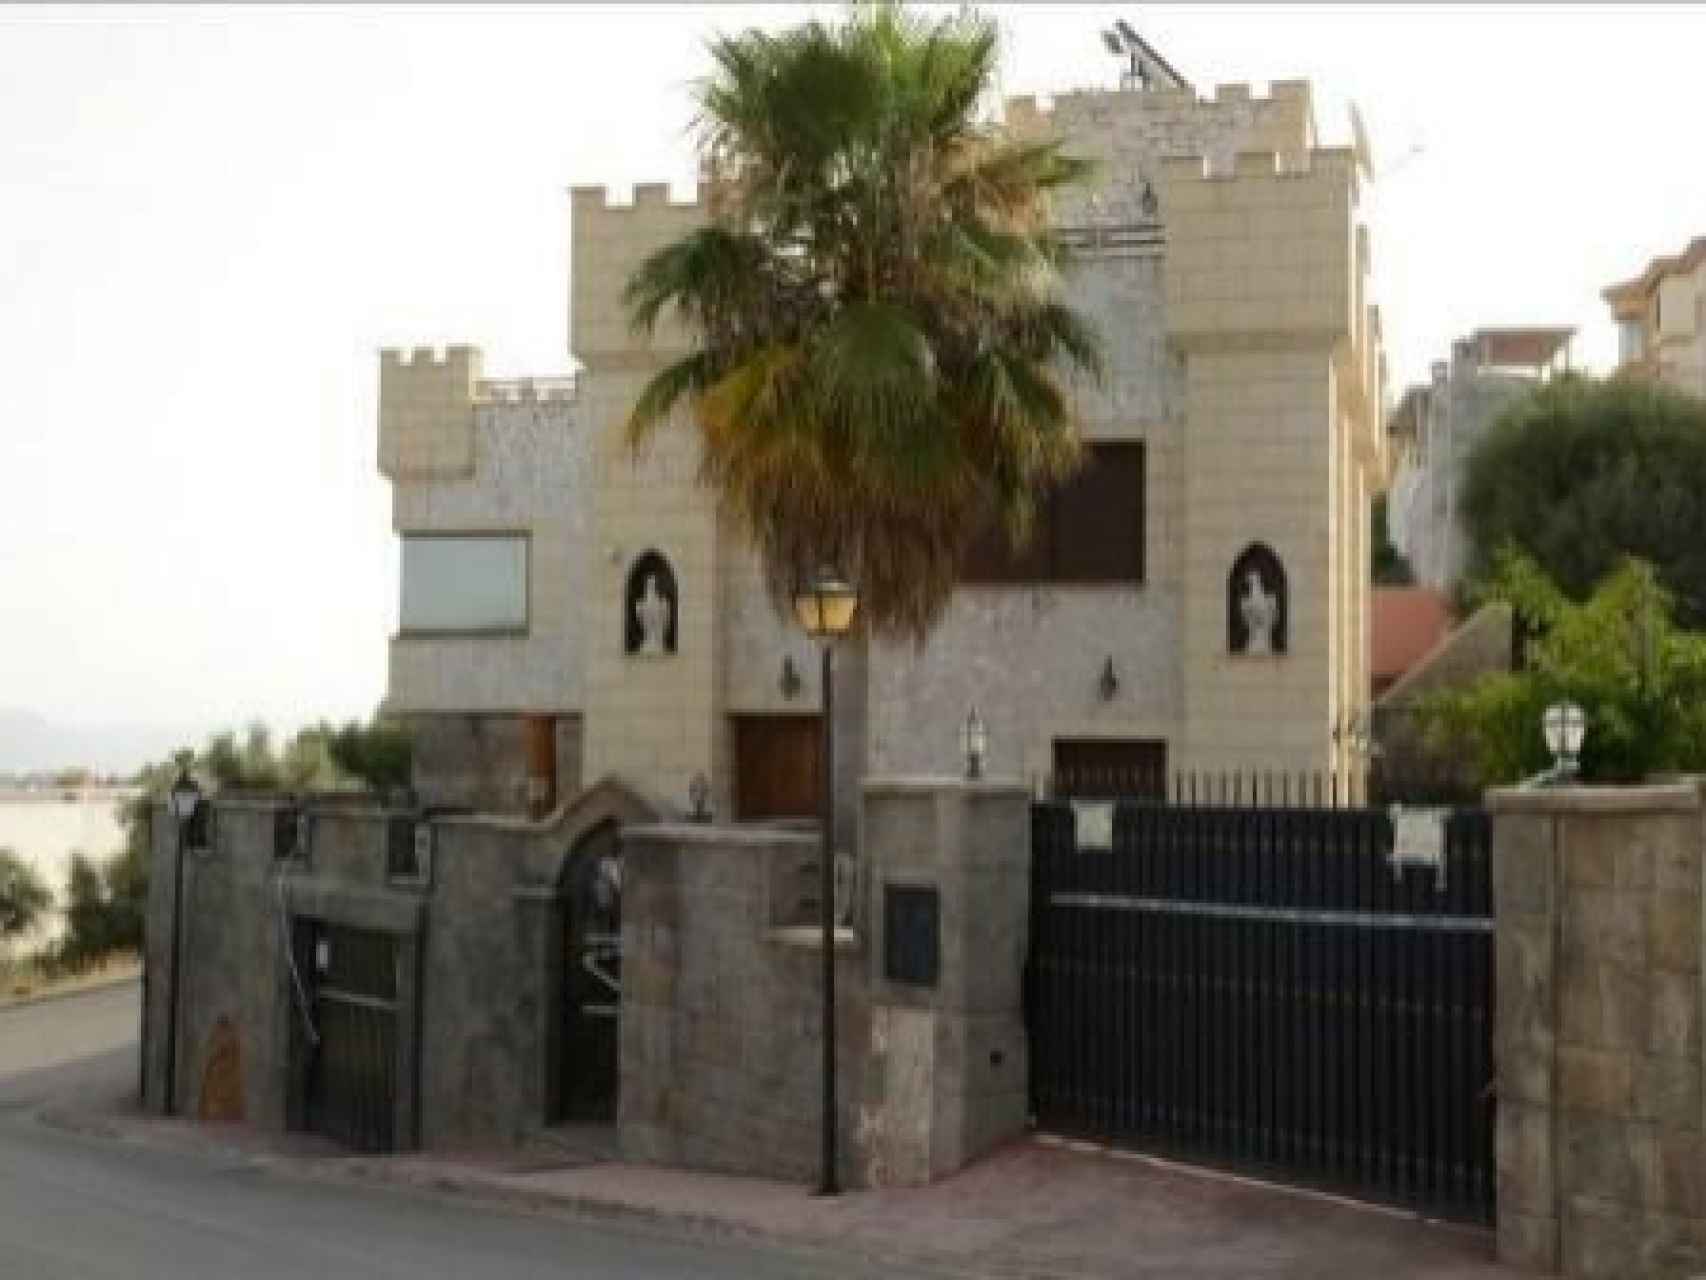 Vivienda en forma de castillo en la que reside Amador Pérez Luque.